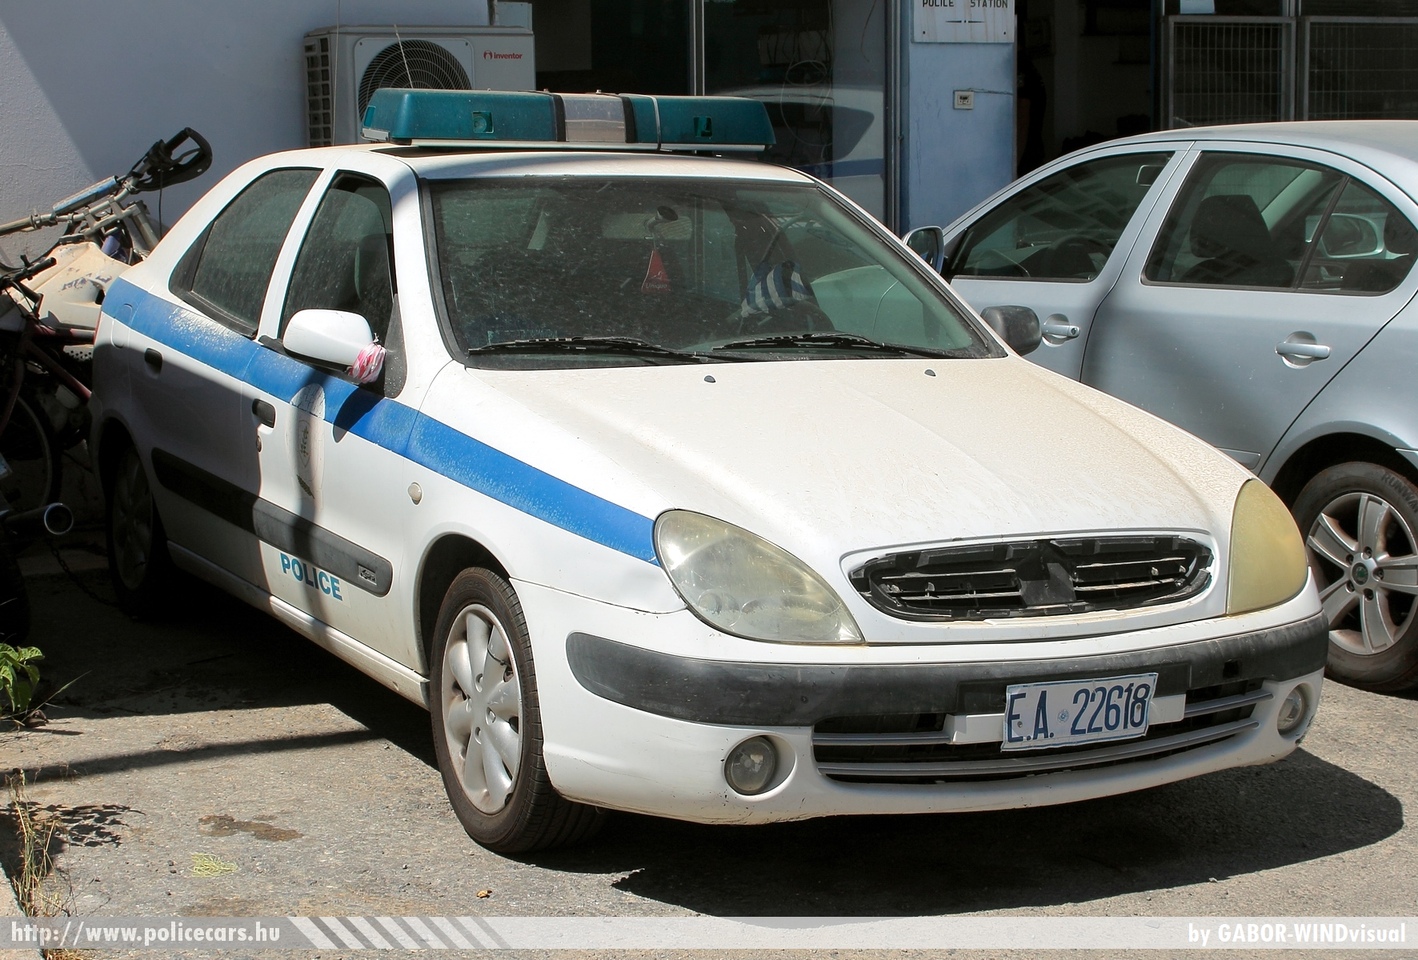 Citroen Xsara, fotó: GABOR-WINDvisual
Keywords: görög Görögország rendőr rendőrautó rendőrség Greece greek police policecar